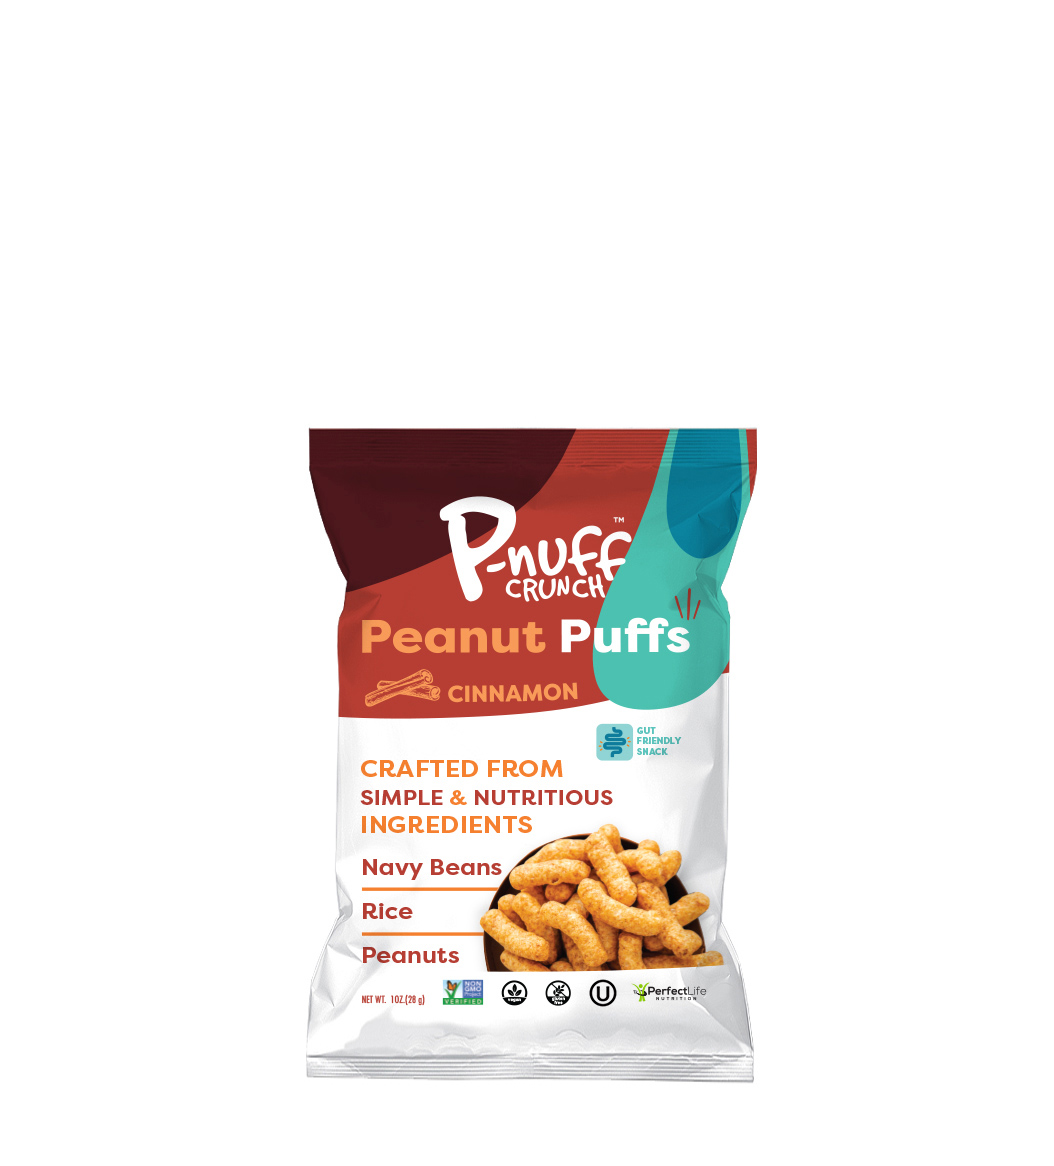 P-nuff Crunch Cinnamon 6 units per case 1.0 oz